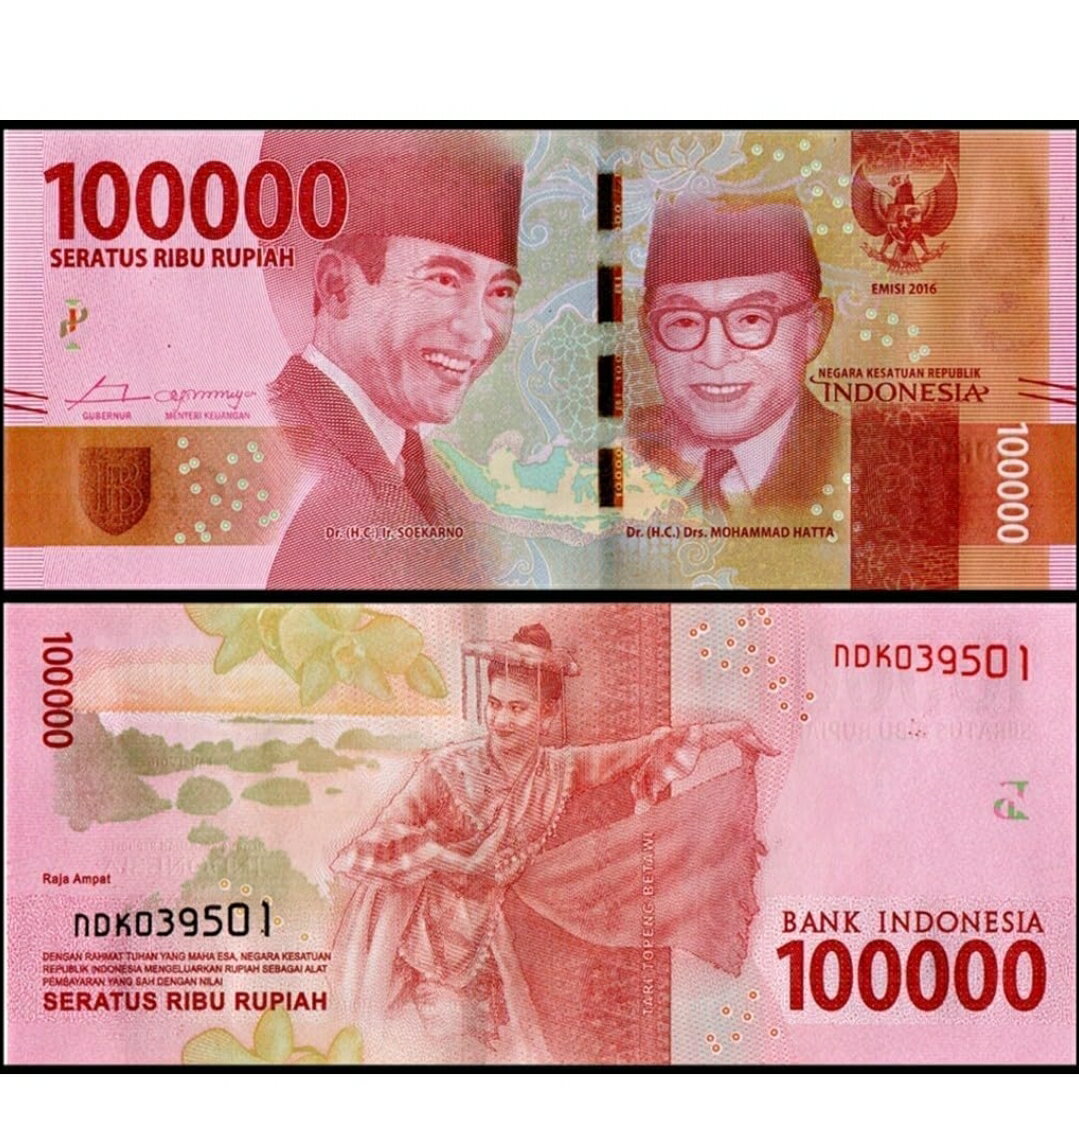 【保証書付き】 インドネシアルピア 10万ルピア 1枚 3枚 10枚 インドネシア紙幣 旧紙幣 インドネシア ルピア 信頼の両替流通紙幣 外貨 使用品 インドネシア 紙幣 本物紙幣の保証